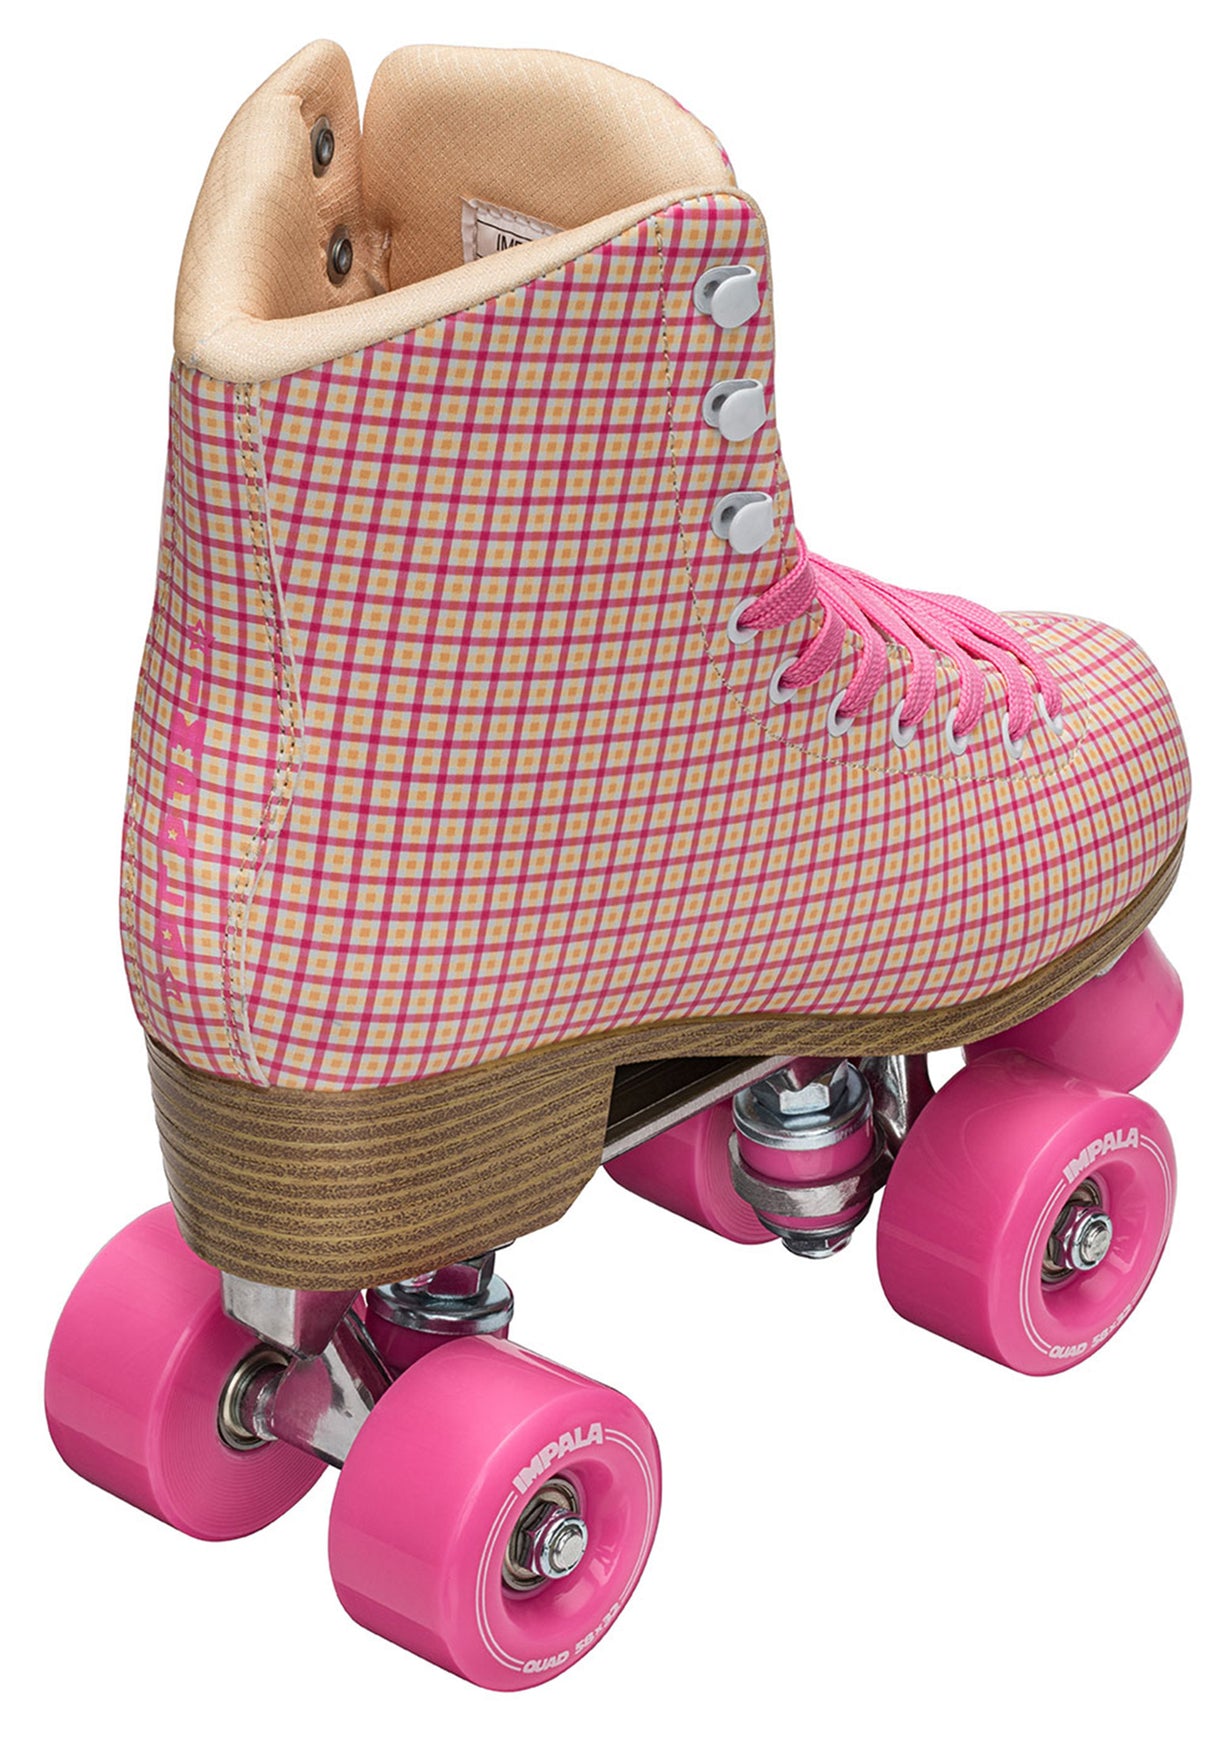 Quad Rollschuhe / Rollerskates pink-tartan Oberansicht